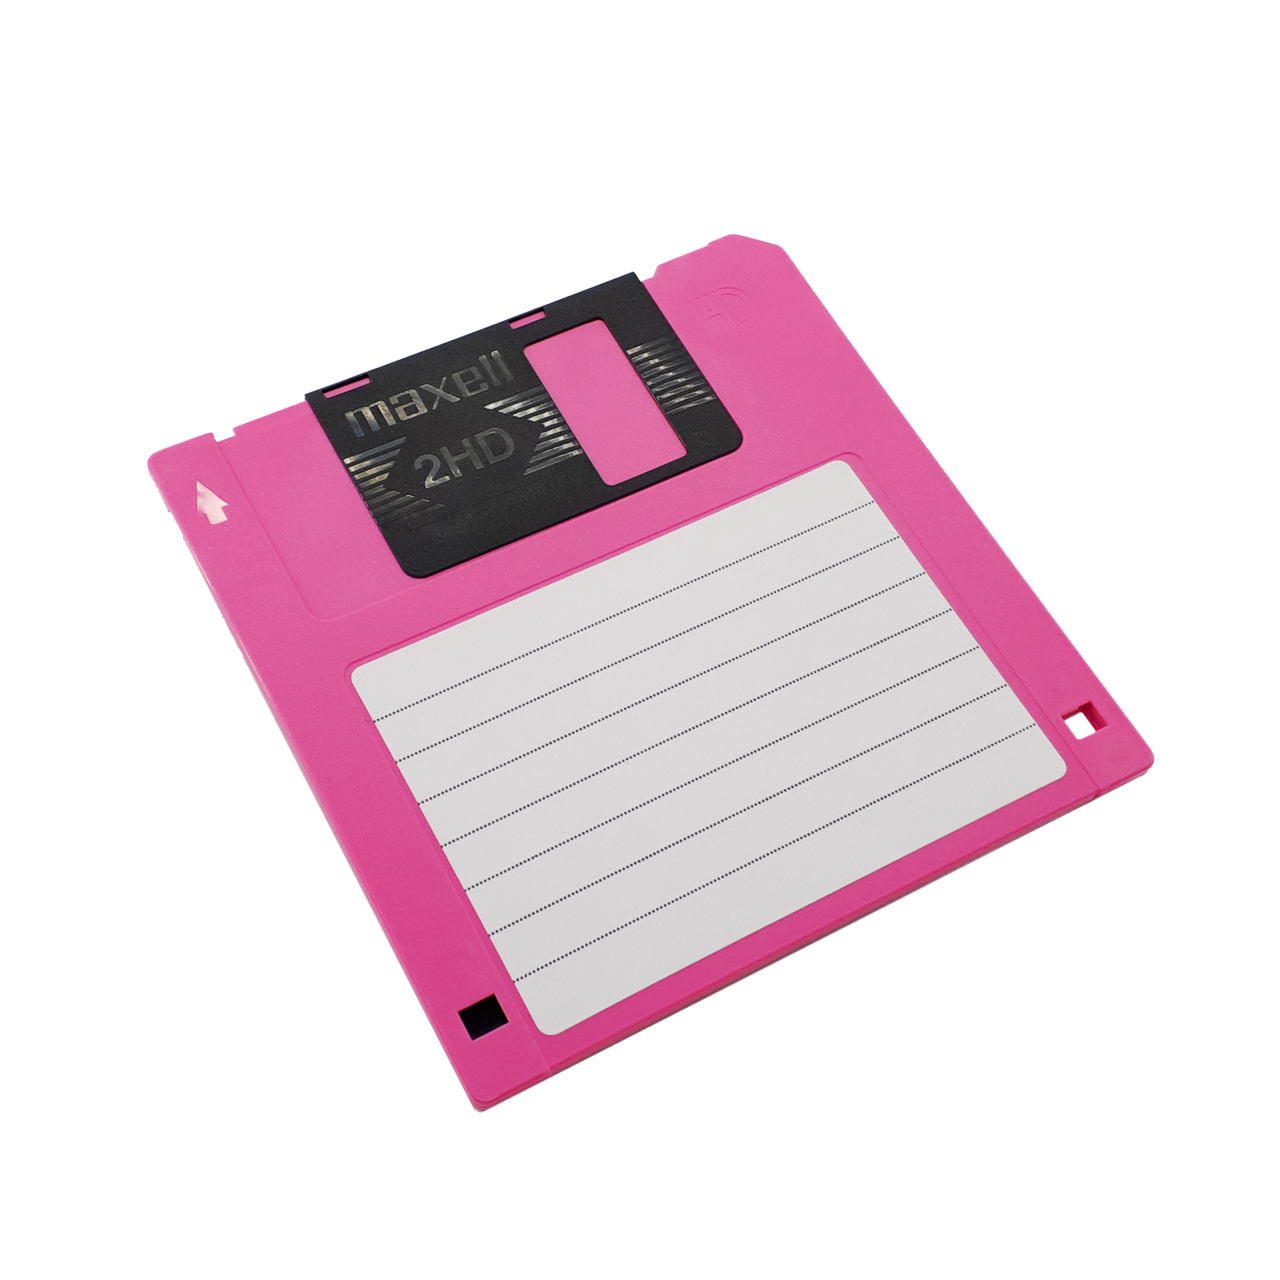 فلاپی دیسکت خام (Floppy Disk 1.44MB) maxell 